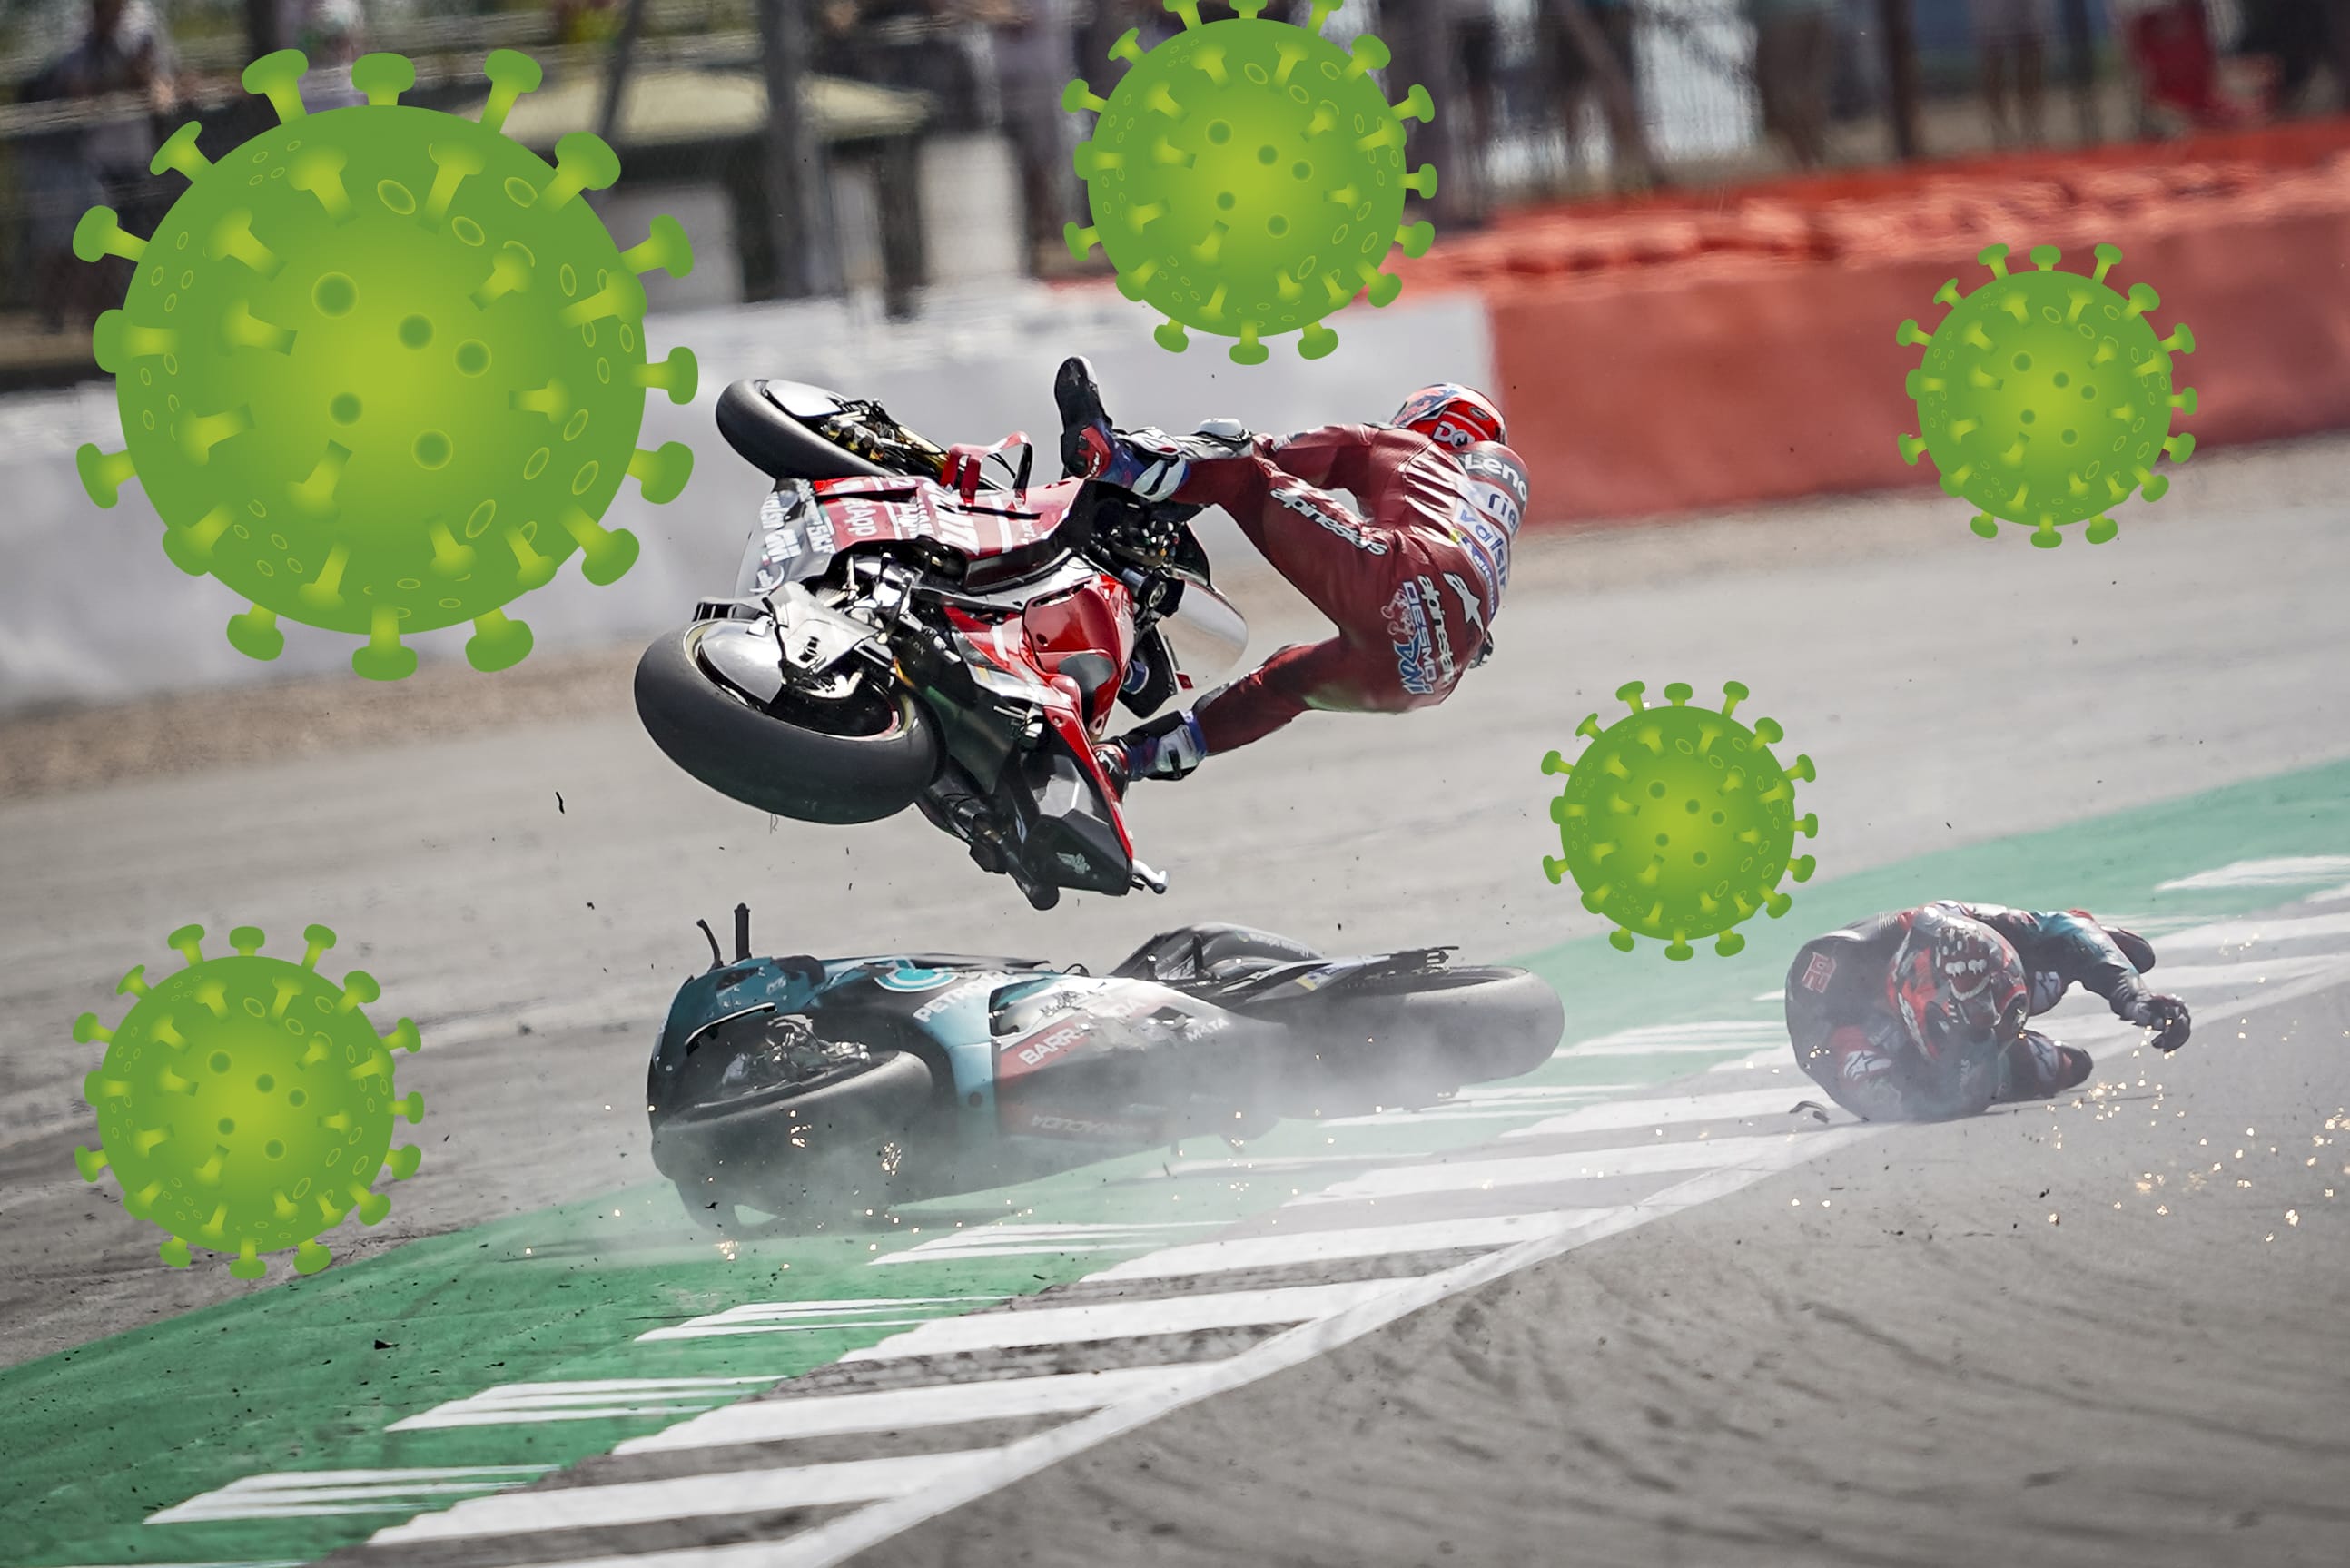 MotoGP - Corona virus postponements
- also in the MOTORCYCLE NEWS APP